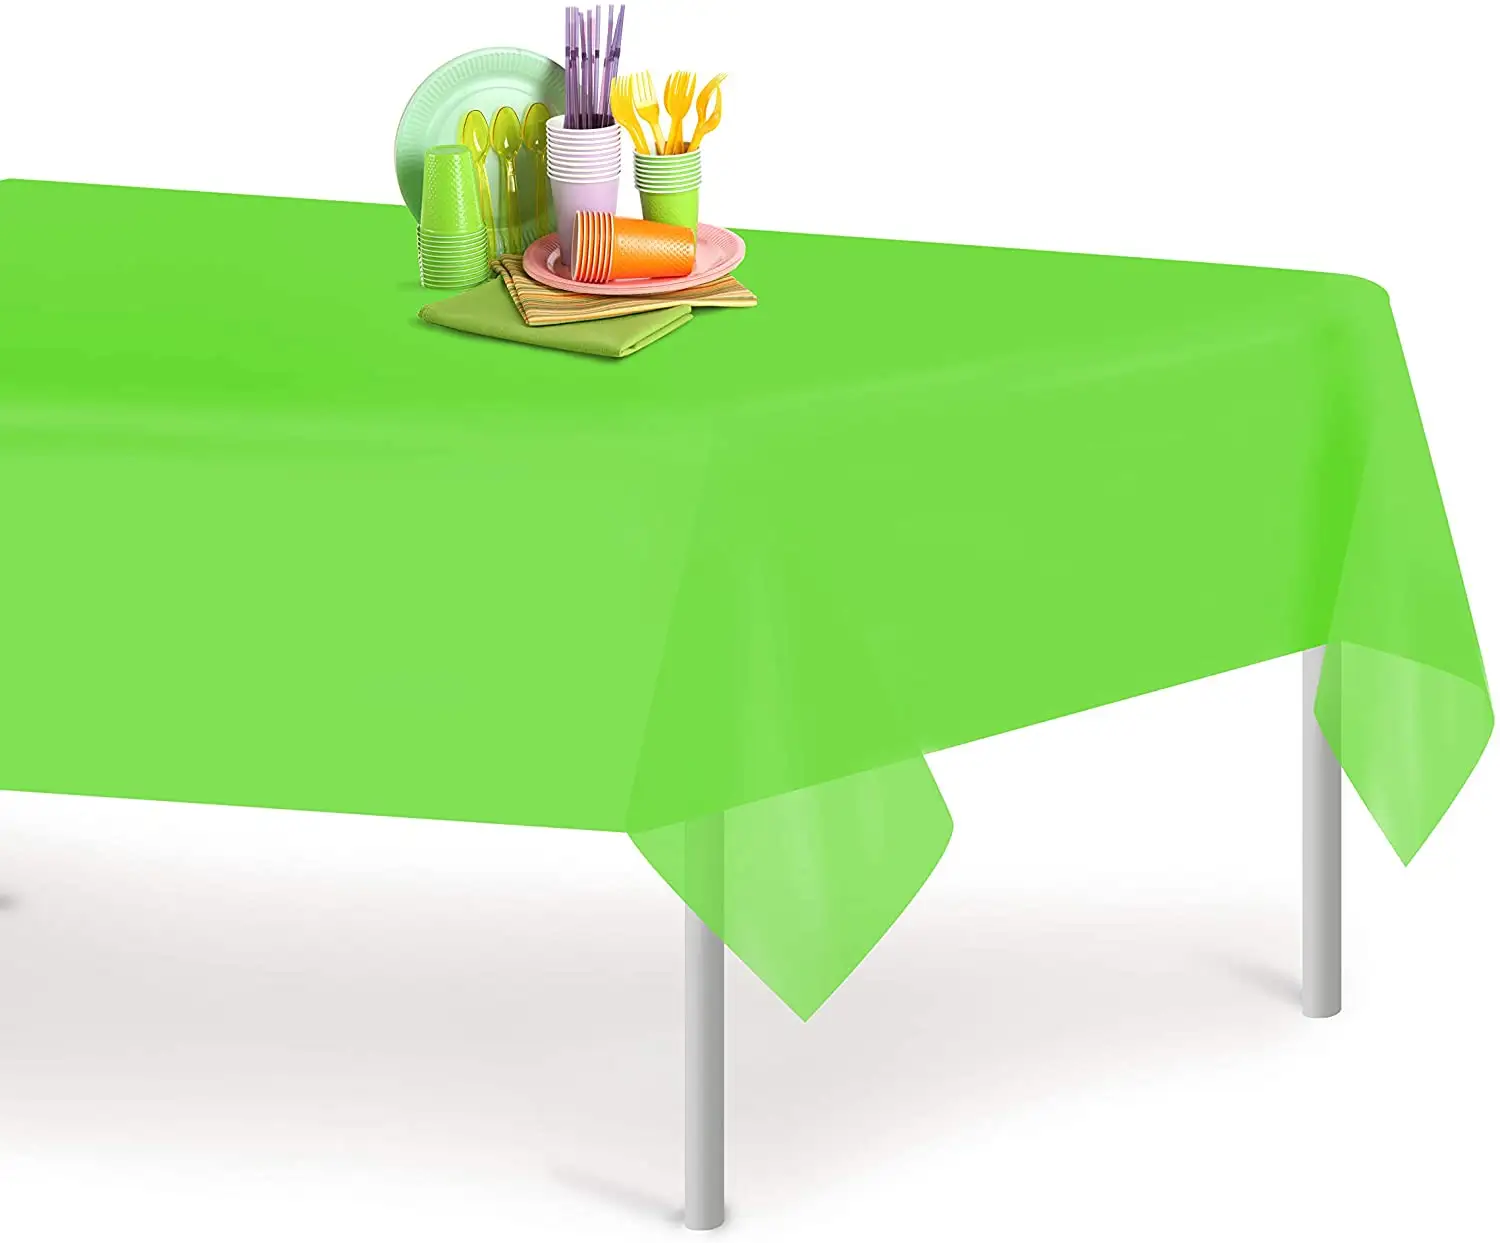 새로운 핫 프리미엄 플라스틱 식탁보 직사각형 플라스틱 테이블 커버